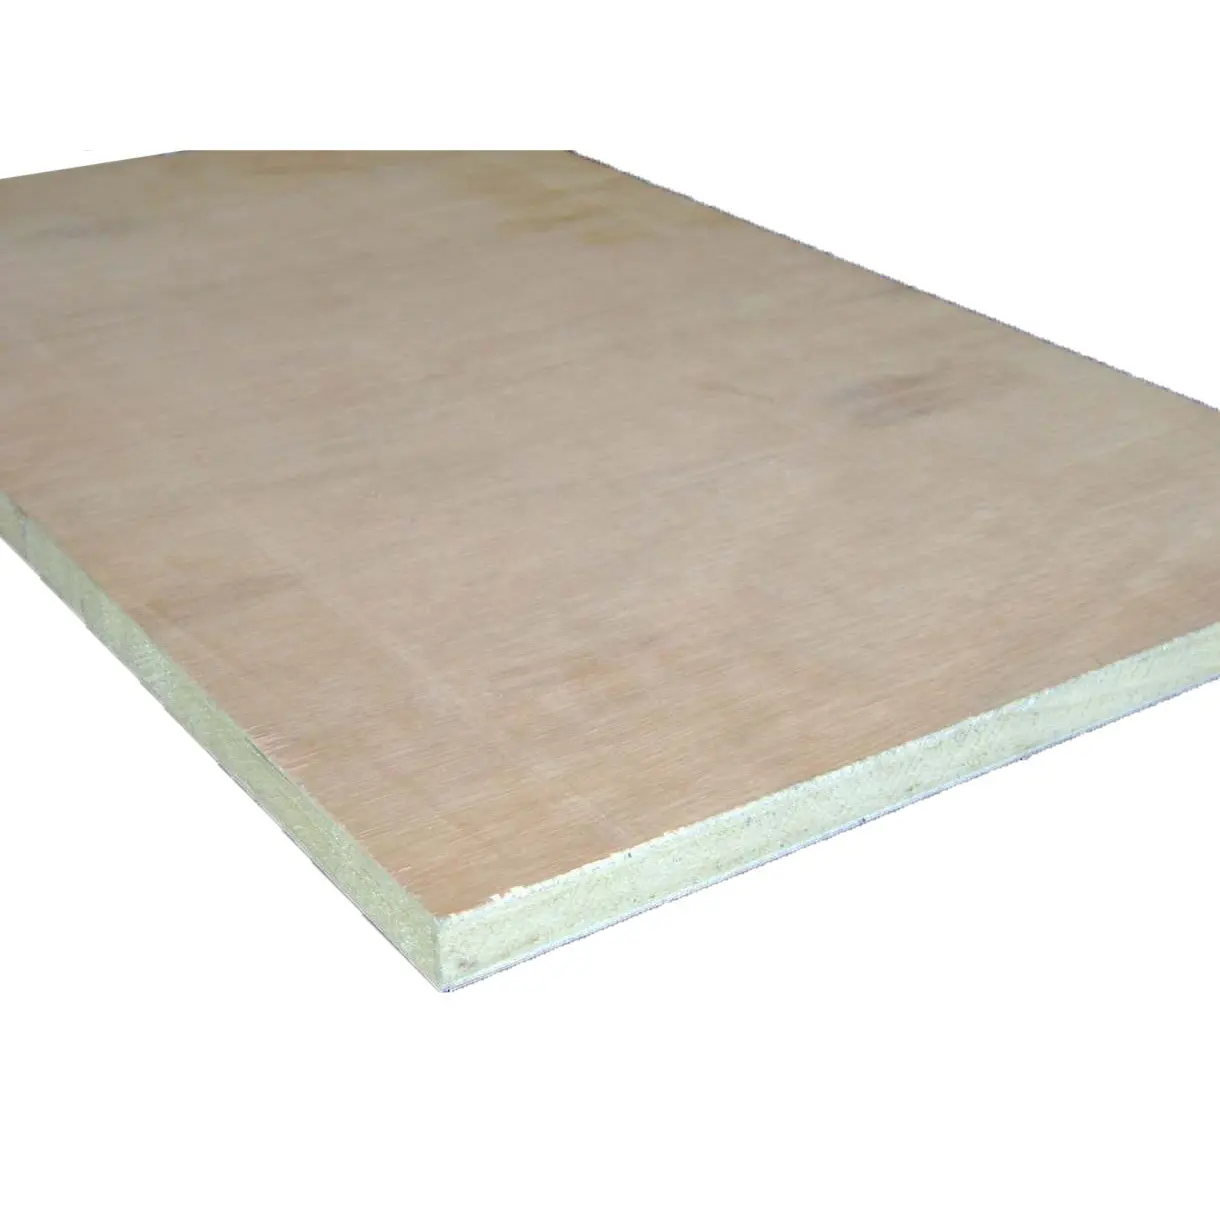 Spielholz 18 mm okoume kommerzielles sperrholz küchenschrank sperrholz natürliches holz sperrholz